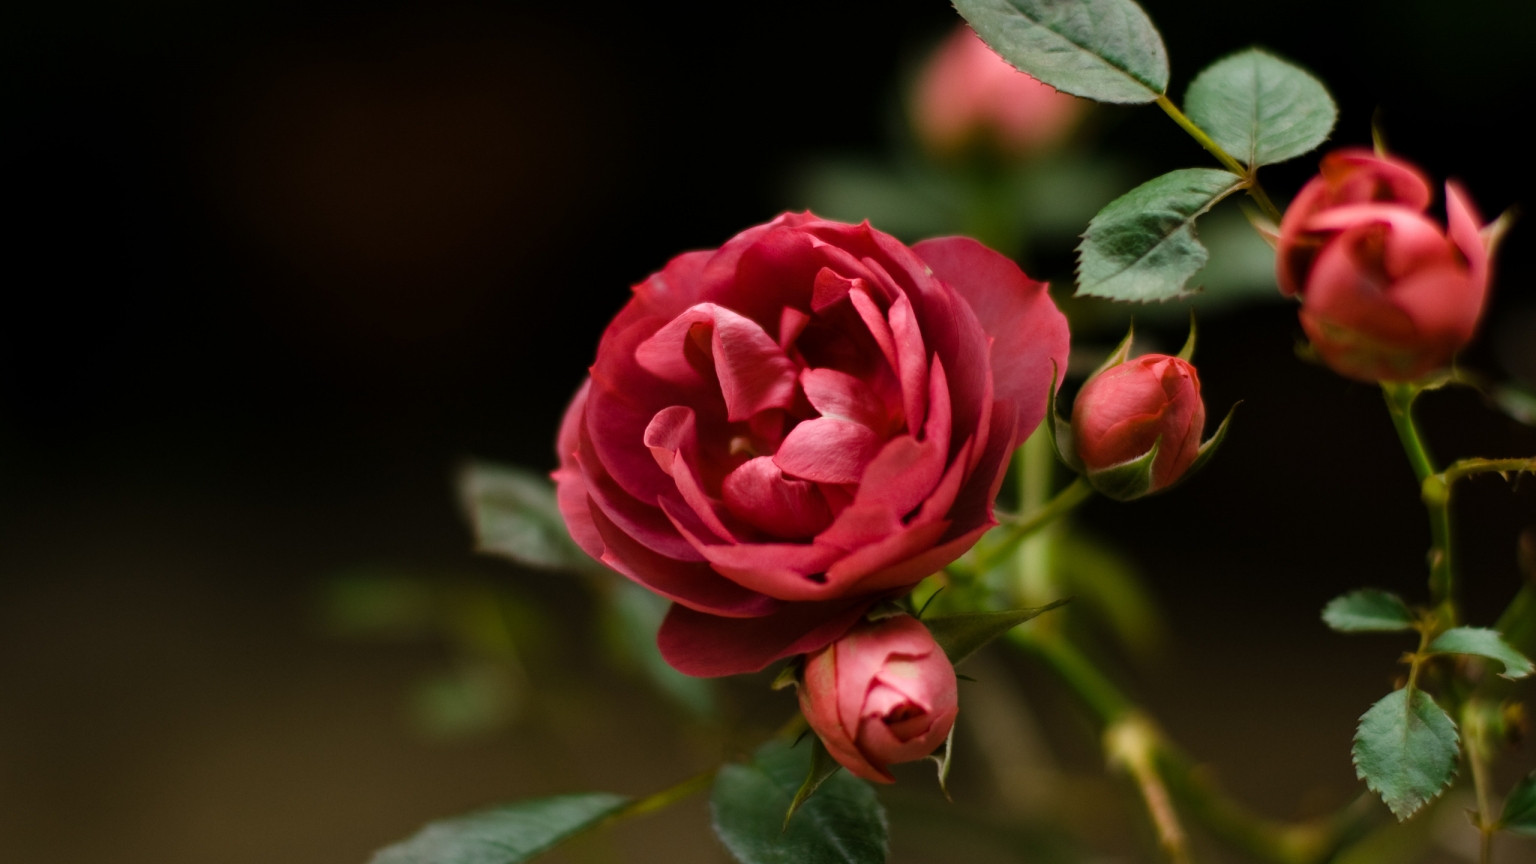 Rose Flower for 1536 x 864 HDTV resolution